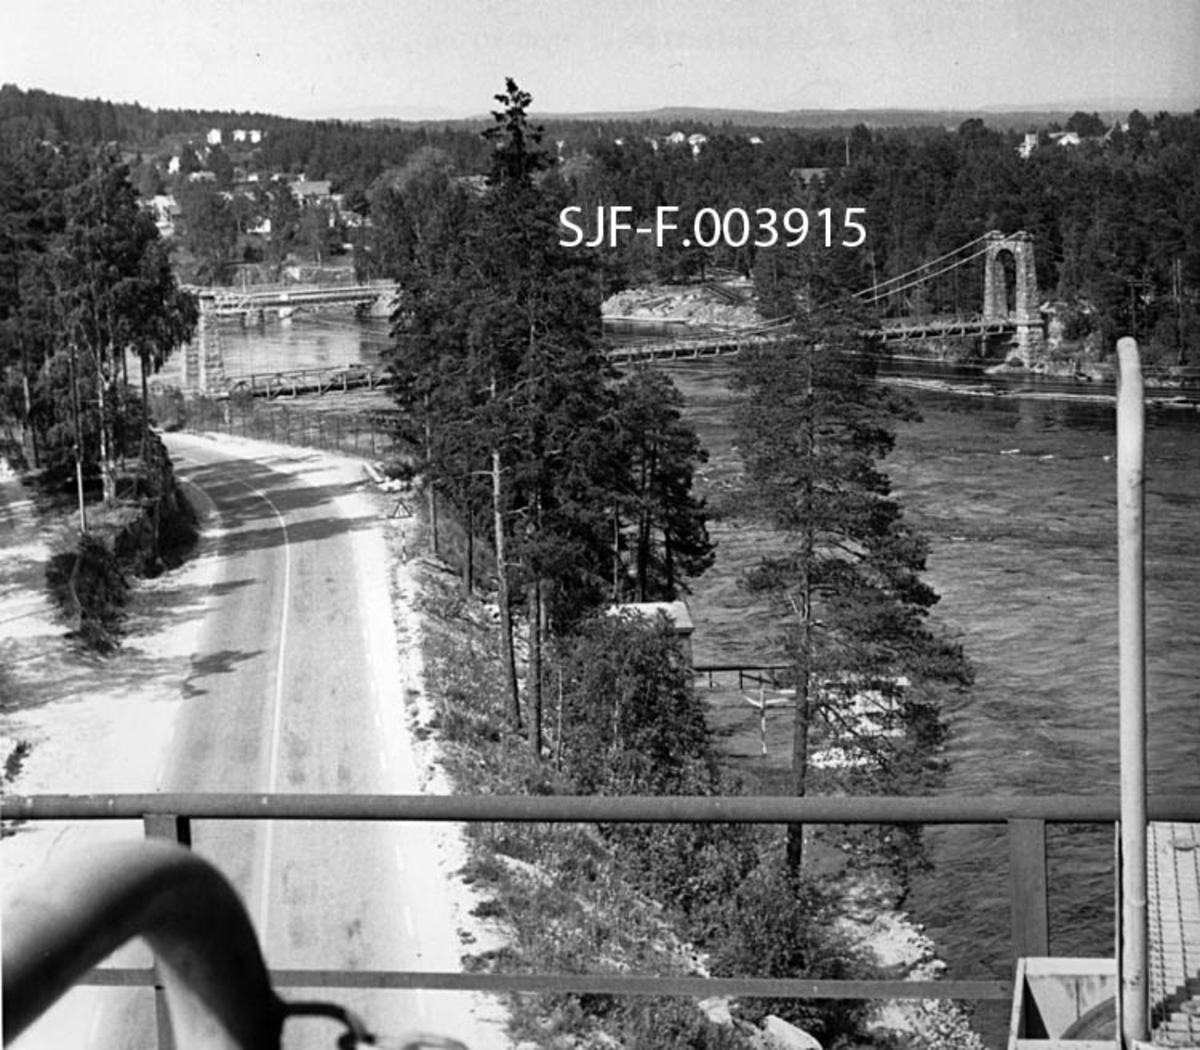 Utsikt fra kranbanen til Geithus Bruk på Modum sommeren 1967.  I forgrunnen ser vi en del av Drammenselva og av fylkesvegen mellom Geithus og Vassbunn.  Vi ser også to bruer som krysser elveløpet.  Nærmest ser vi hengebrua ”Geithus bru” – også kalt ”Nybrua” – og nedenfor jernbanebrua for sidesporet mellom Drammenselvens Papirfabrikker og Geithus stasjon på Randsfjordbanen.  I bakgrunnen ser vi deler av bebyggelsen på tettstedet Geithus. 

Baksida av den kopien av fotografiet Norsk Skogmuseum har overtatt fra Drammenselvens Papirfabrikker har følgende blyanttekst:

"Utsikt fra renseriet Geithus Bruk juni 1967. Tatt mot vest.  Vi ser Geithus og i forgrunnen hovedveg mellom Åmot og Geithus, samt i bakgrunnen dambroen ved Dr. elvens Papirfabrikker.  O. Jørgensen. "

Lokalkjente folk har påpekt at det ikke dreier seg om en "hovedveg", men en fylkesveg, og at den ikke går mellom Åmot og Geithus, men mellom Geithus og Vassbunn. 